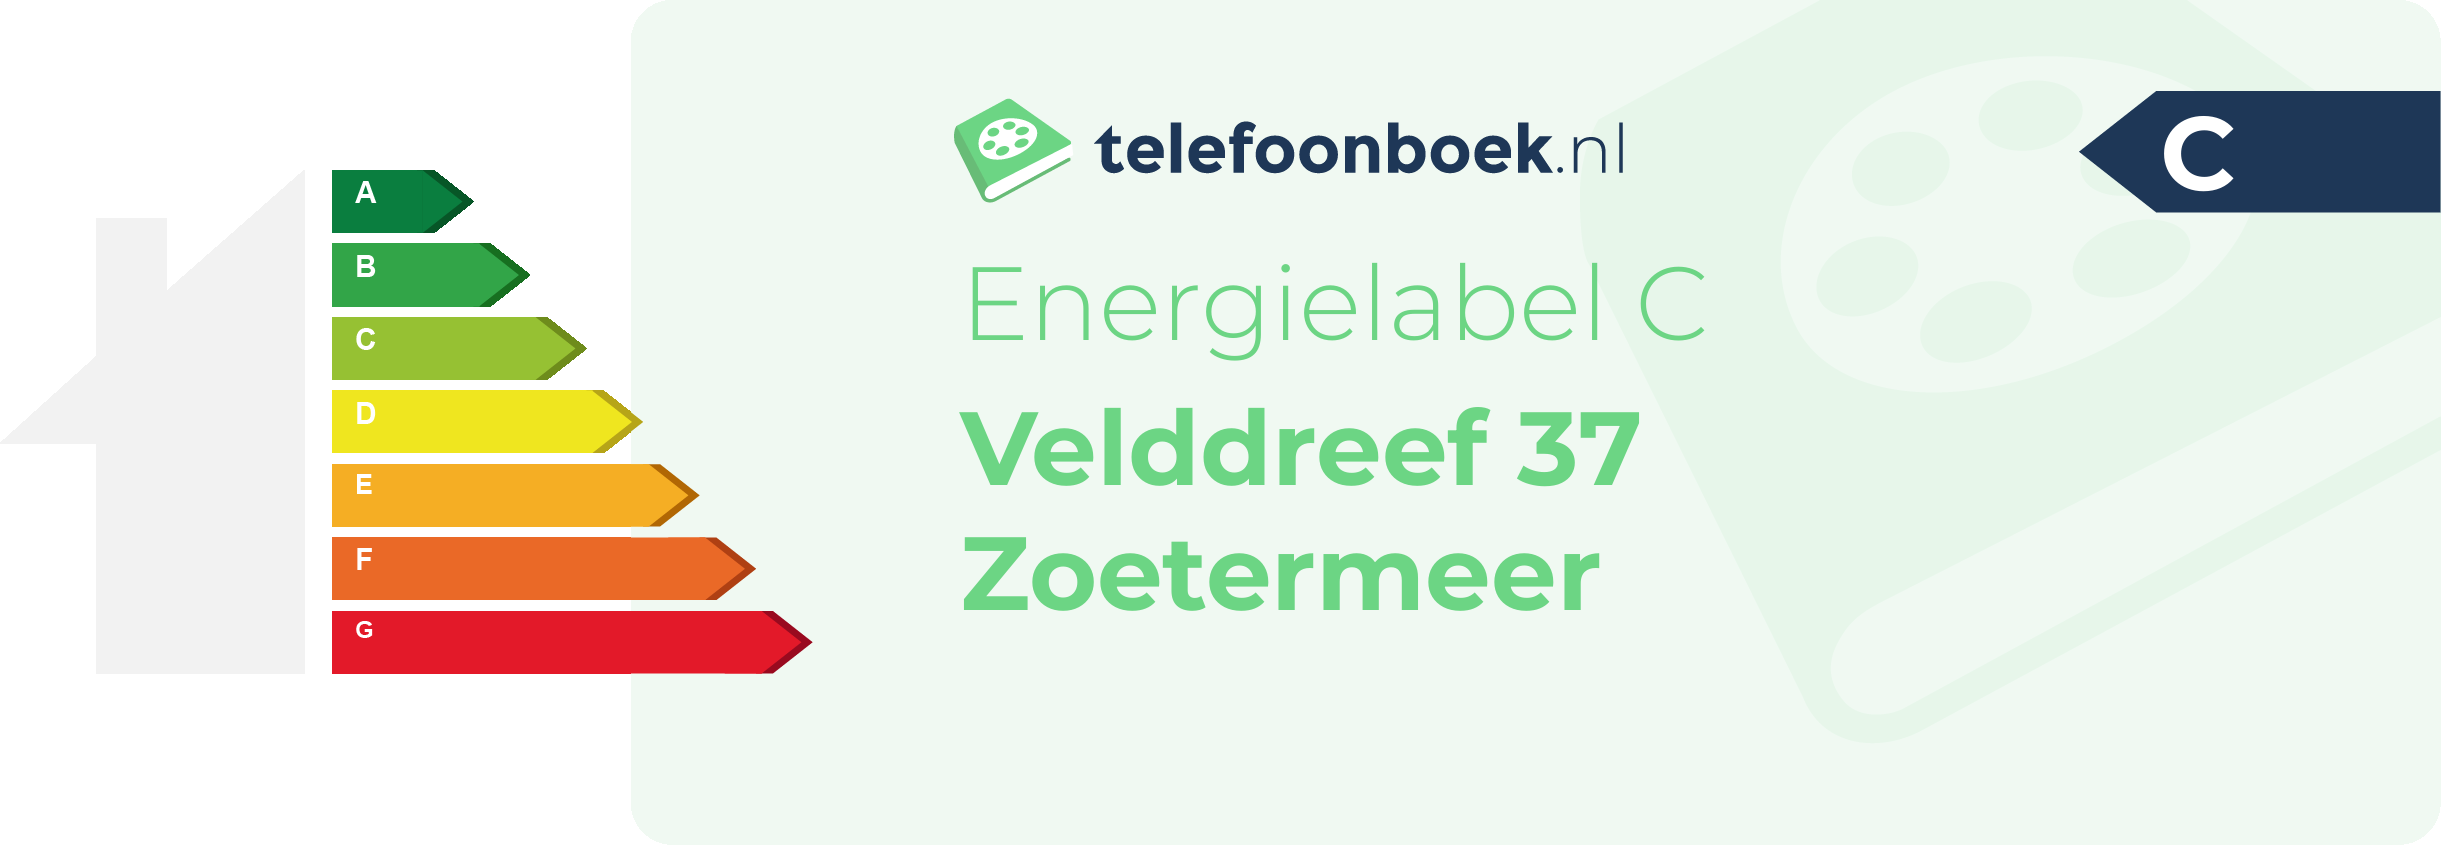 Energielabel Velddreef 37 Zoetermeer